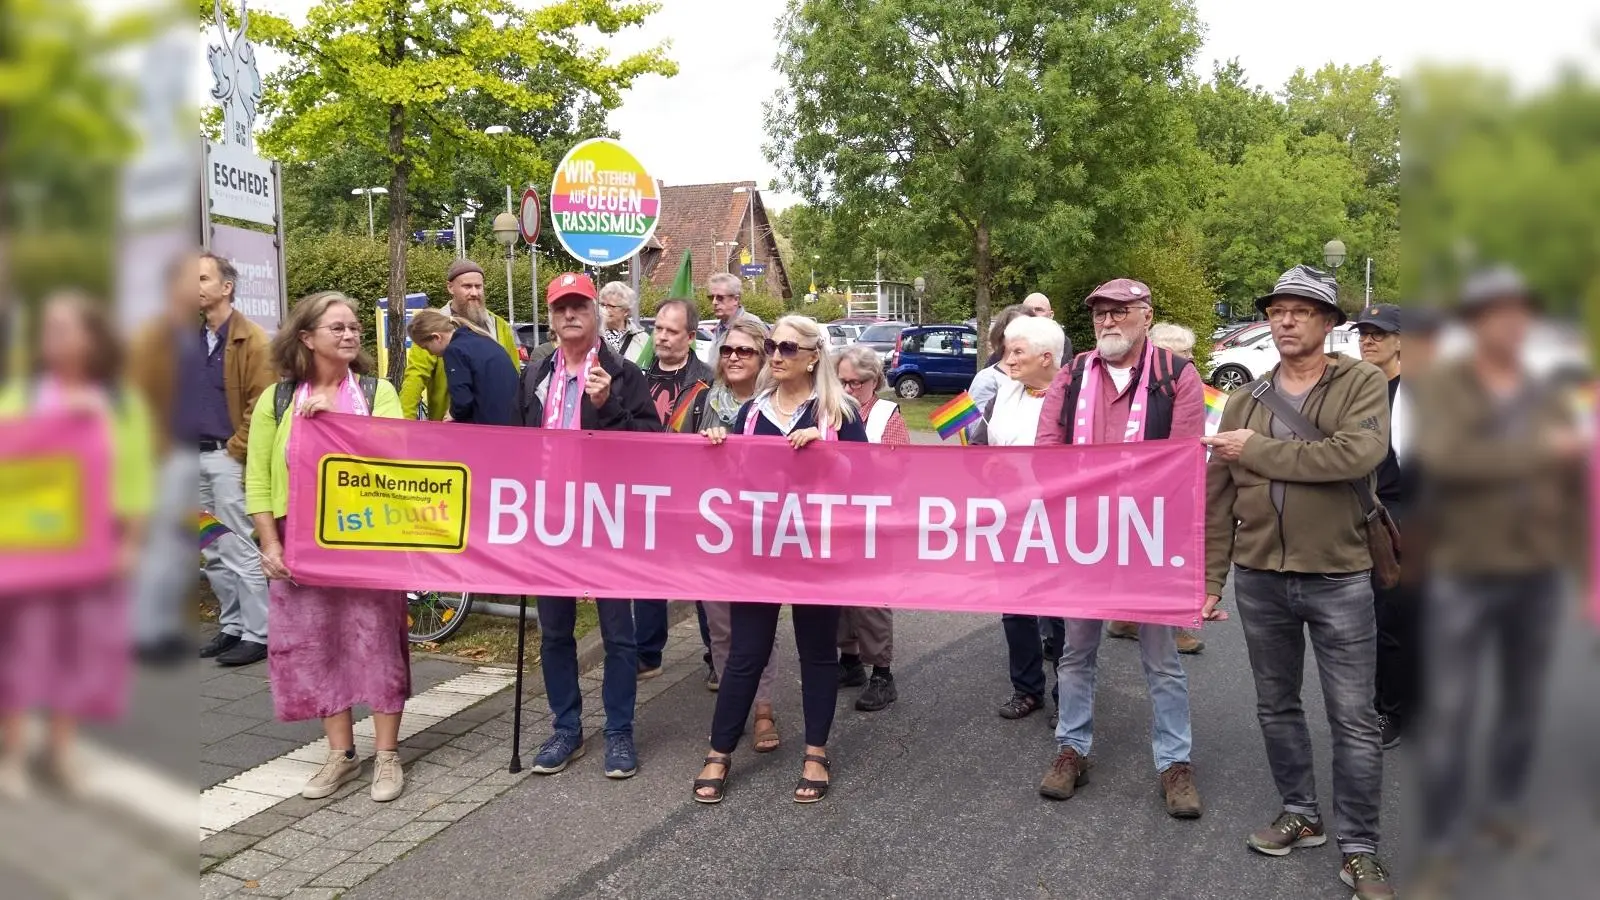 Aktive des Vereins auch auf Demonstrationen außerhalb von Bad Nenndorf aktiv, wie hier in Eschede. (Foto: privat)